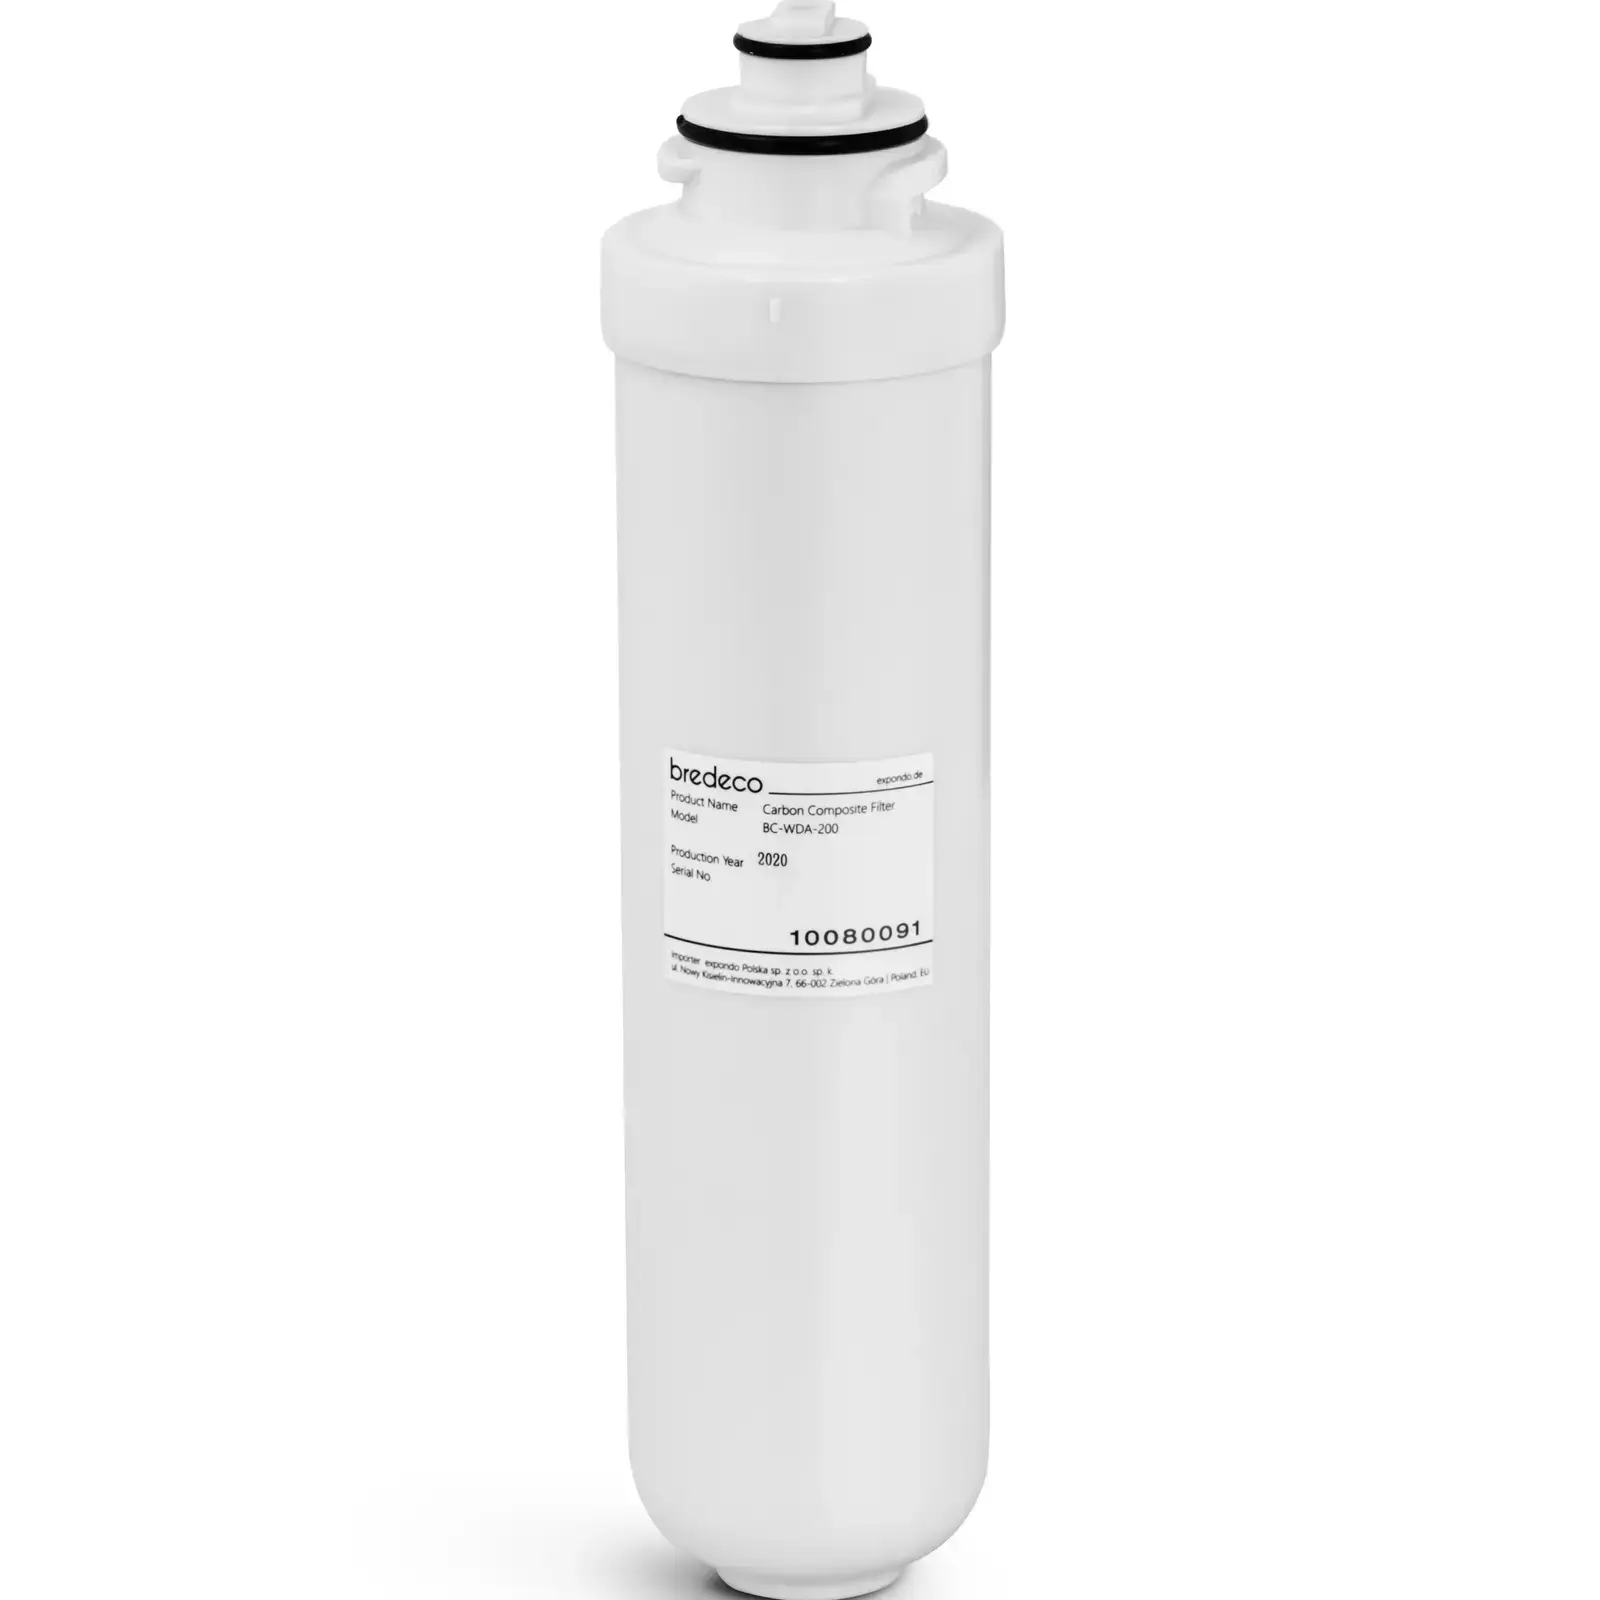 bredeco Koolstof composiet filter - 2-delige filtratie - 1 µ m/5 µ m